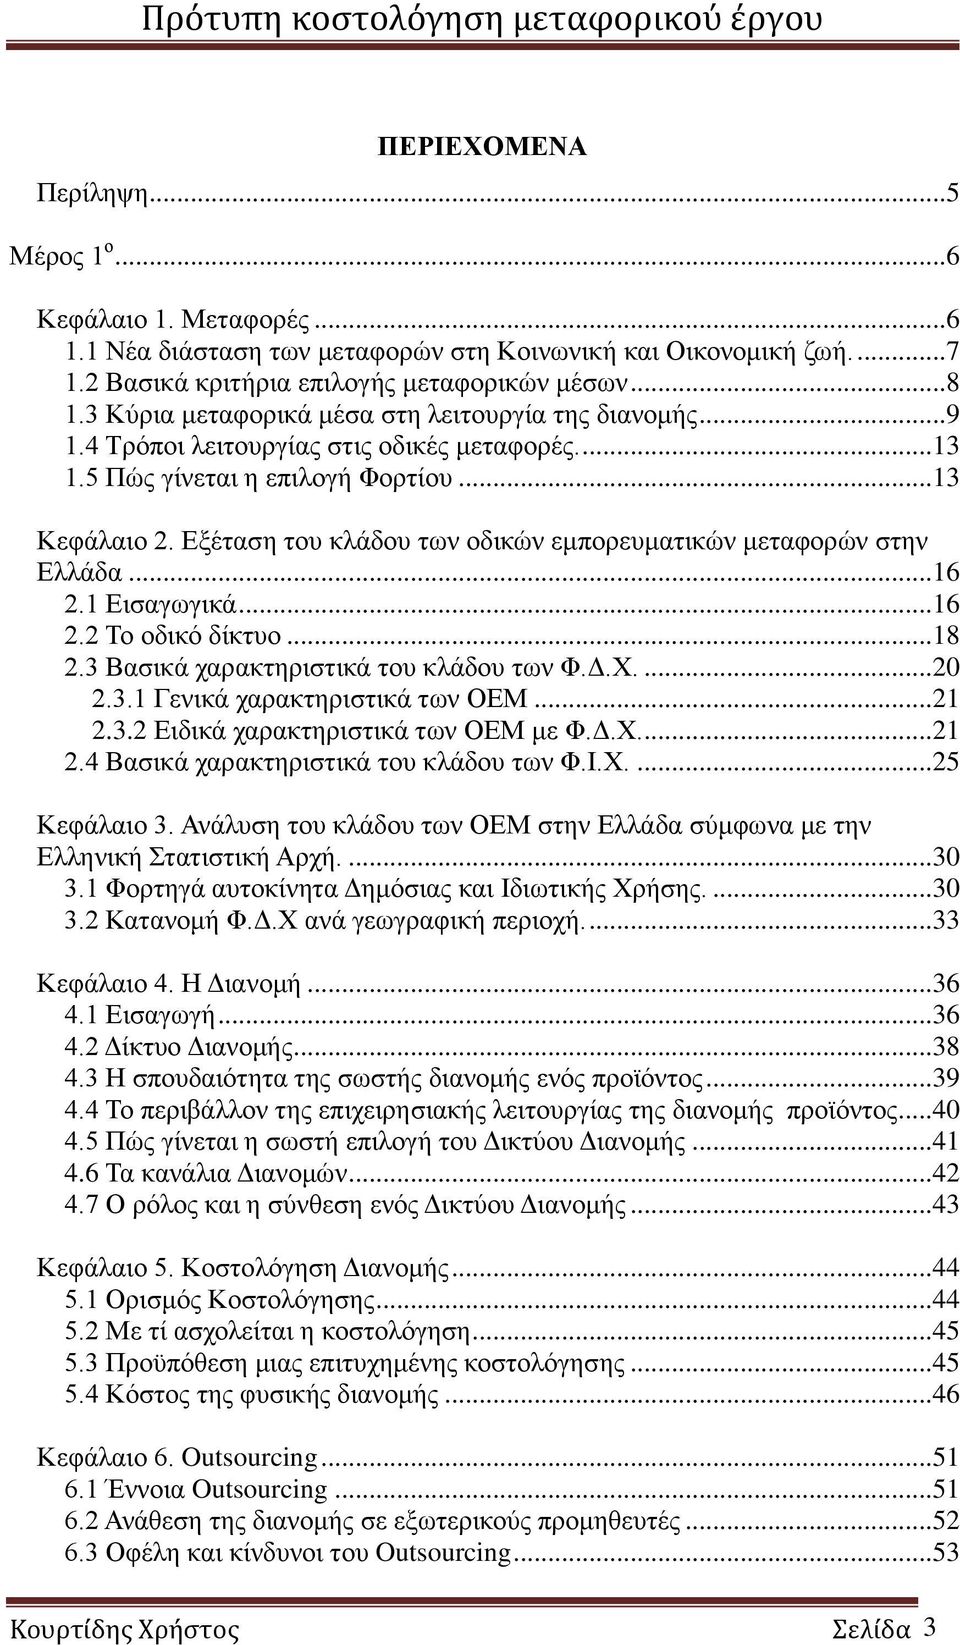 Εξέταση του κλάδου των οδικών εμπορευματικών μεταφορών στην Ελλάδα...16 2.1 Εισαγωγικά...16 2.2 Το οδικό δίκτυο...18 2.3 Βασικά χαρακτηριστικά του κλάδου των Φ.Δ.Χ....20 2.3.1 Γενικά χαρακτηριστικά των ΟΕΜ.